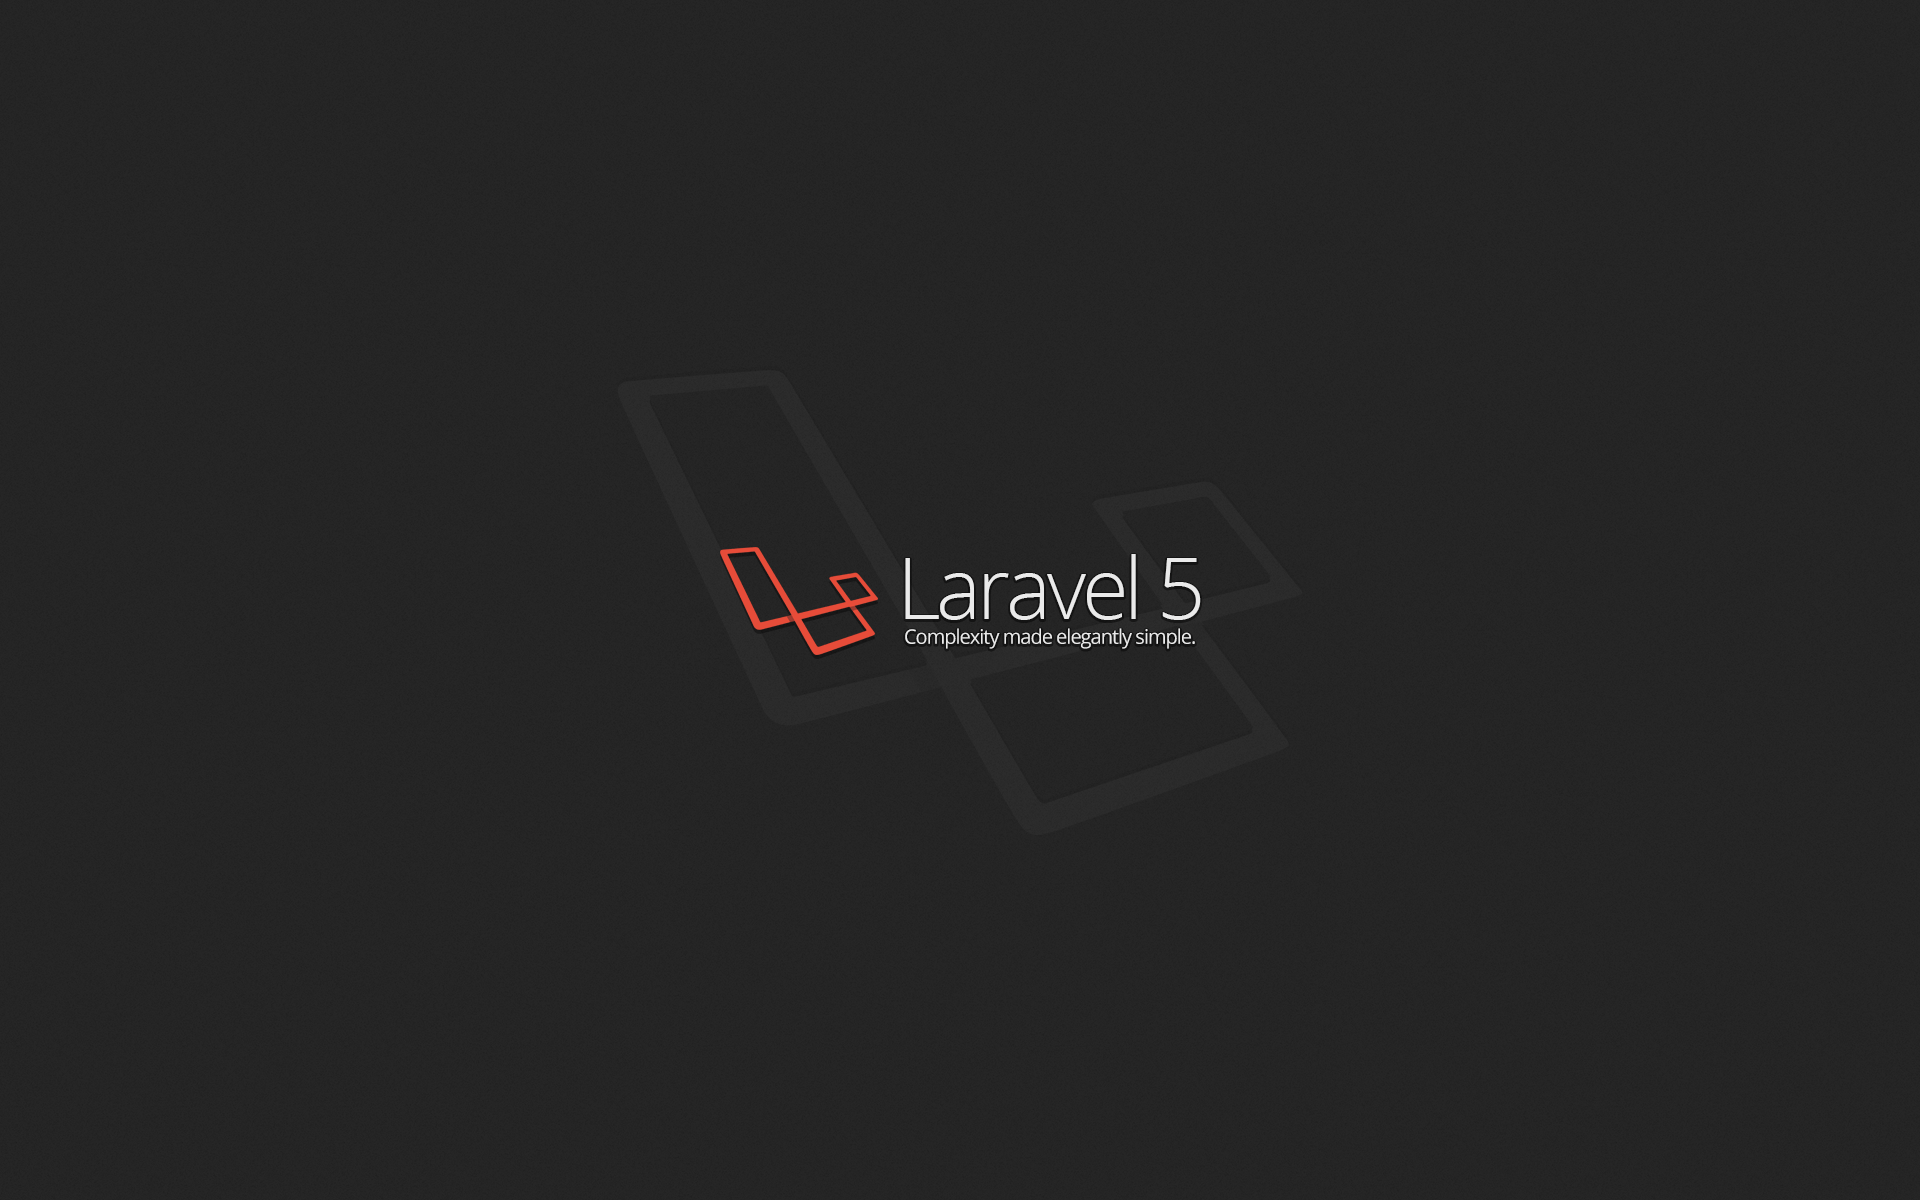 Free Laravel wallpapers: Bạn đang muốn tìm kiếm những hình nền đẹp và miễn phí để trang trí cho máy tính của mình? Những hình nền Laravel miễn phí chắc chắn sẽ làm bạn hài lòng! Với nhiều mẫu hình nền đẹp và độc đáo, bạn có thể thoải mái lựa chọn cho mình hình ảnh phù hợp nhất. Xem hình ảnh liên quan để tìm kiếm hình nền mà bạn muốn.